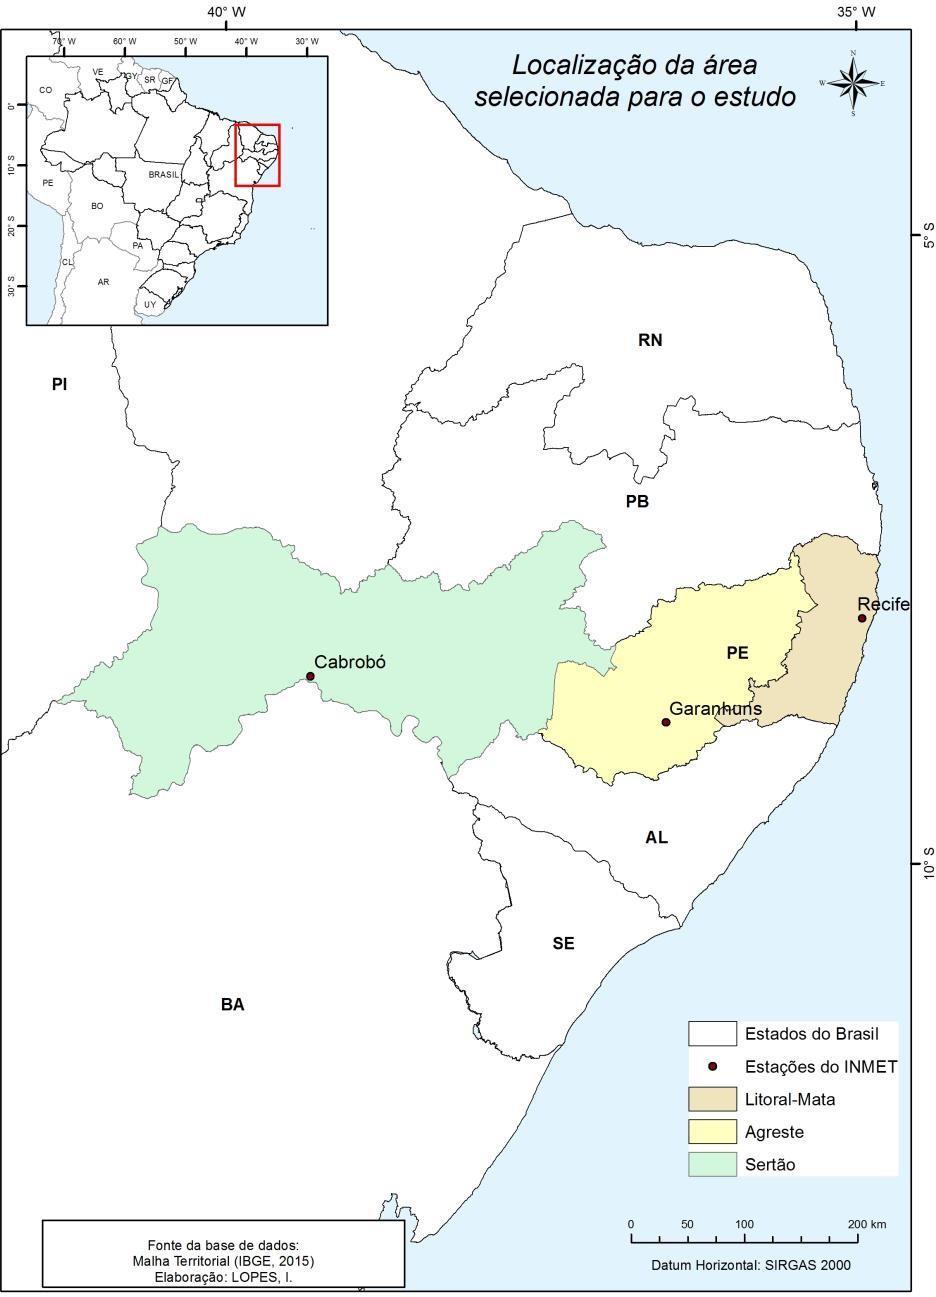 Caracterização pluviométrica, precipitações máximas e balanço hídrico para diferentes regimes pluviométricos em mesoregiões de Pernambuco Figura 1.